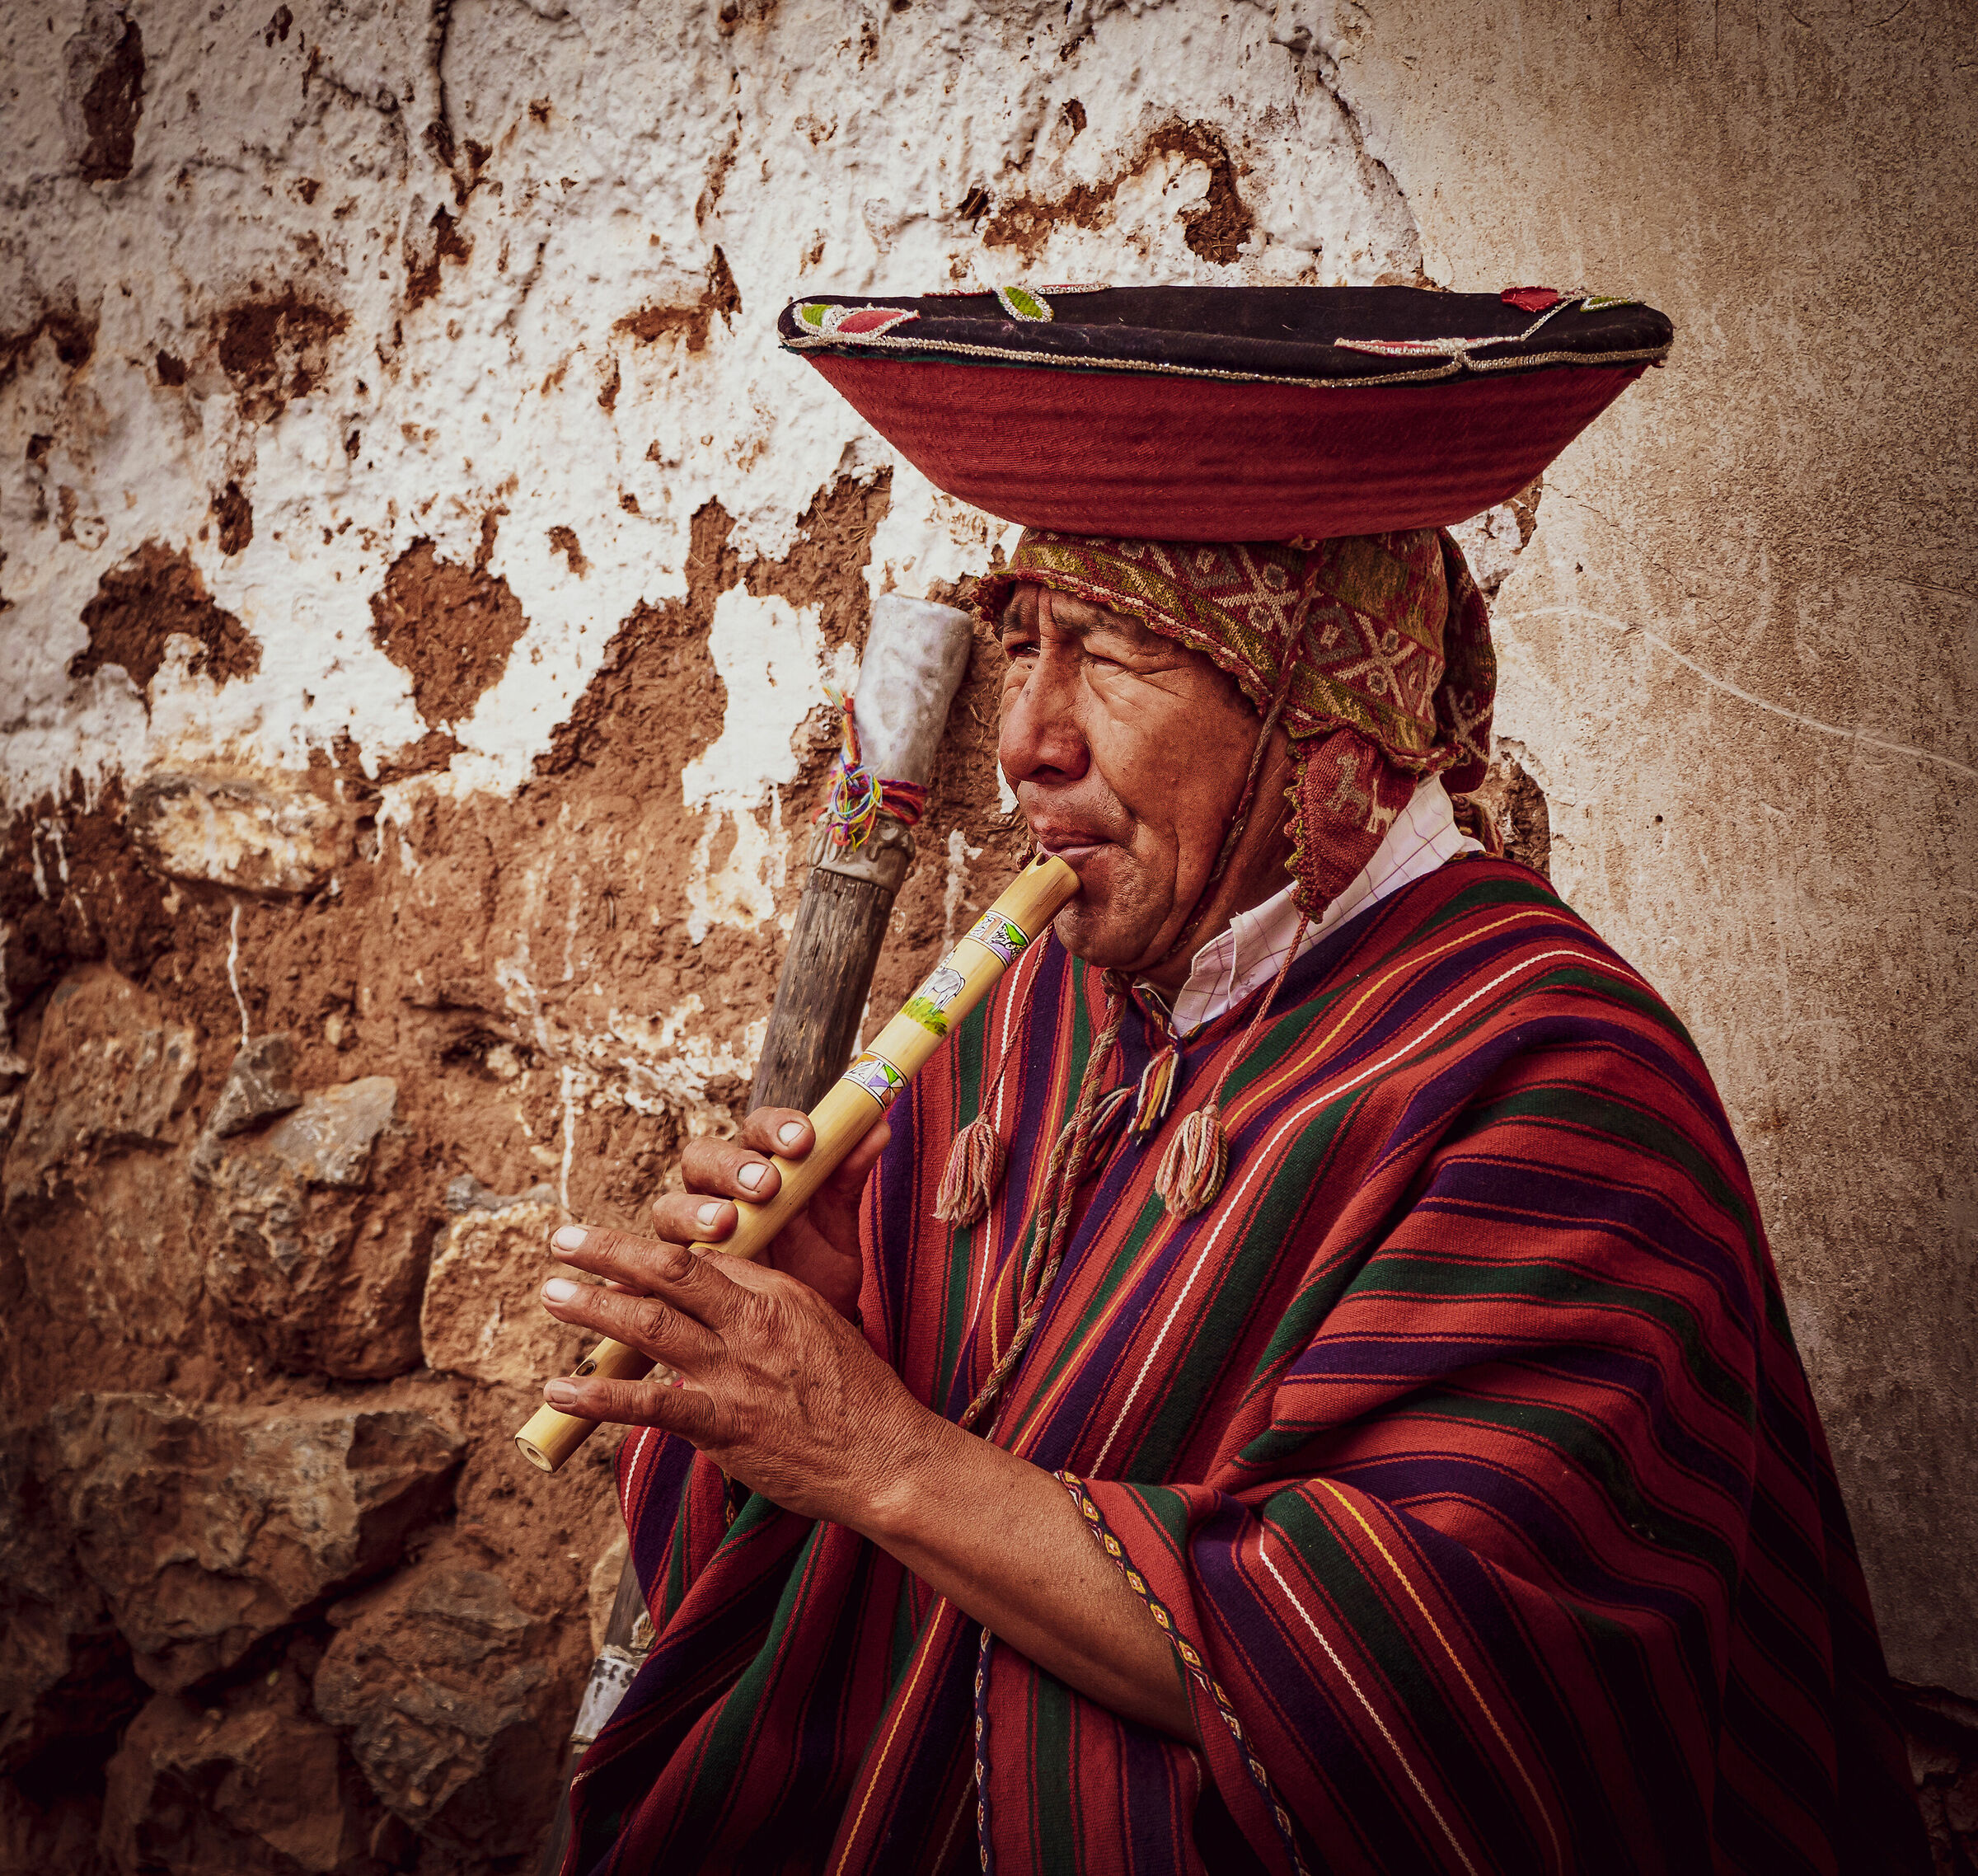 The charm of Peruvian music......